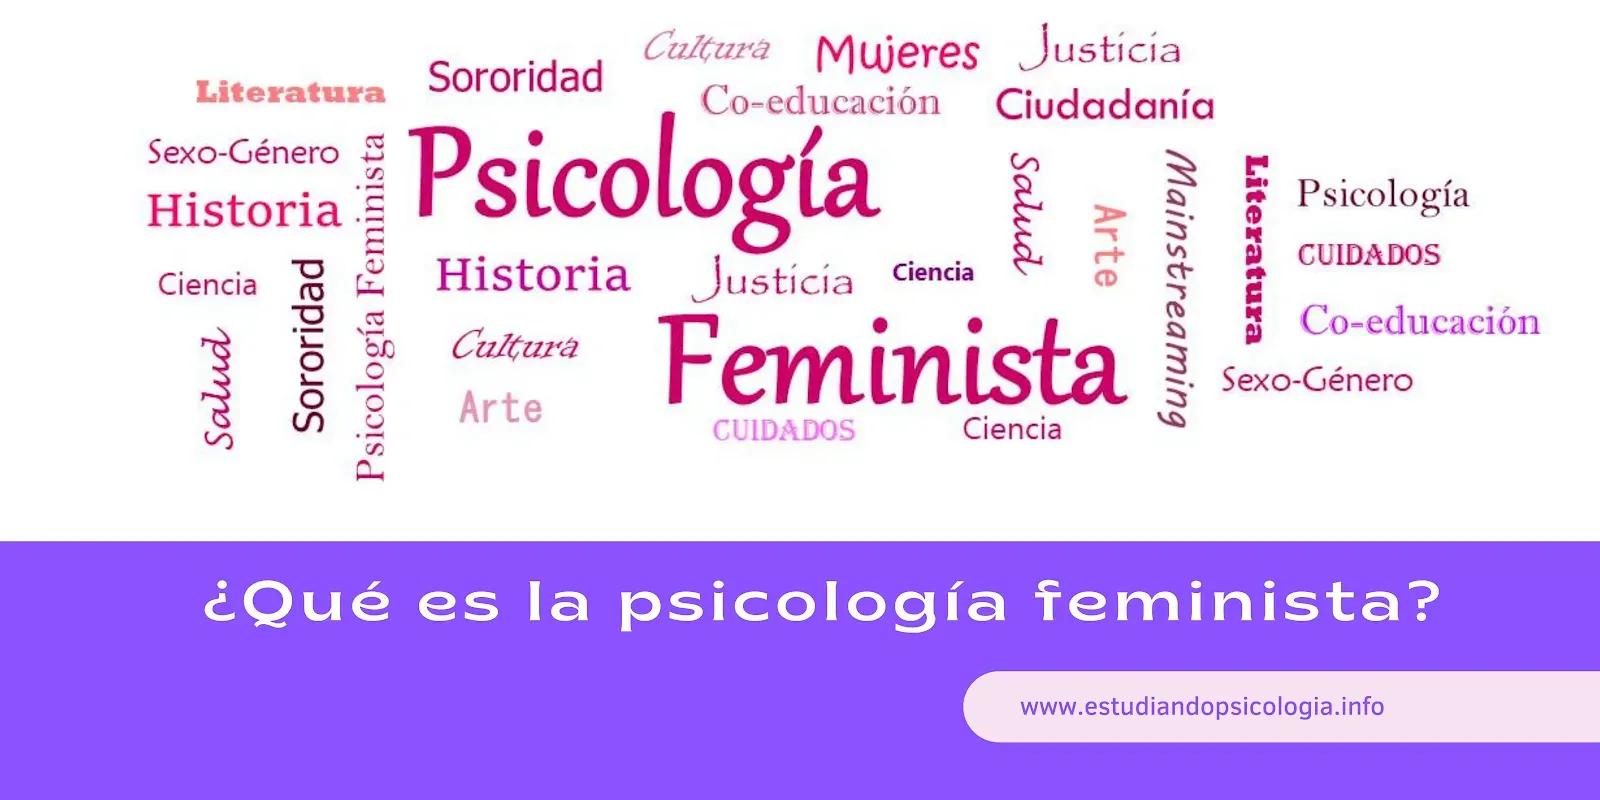 ¿Qué es la Psicología feminista?